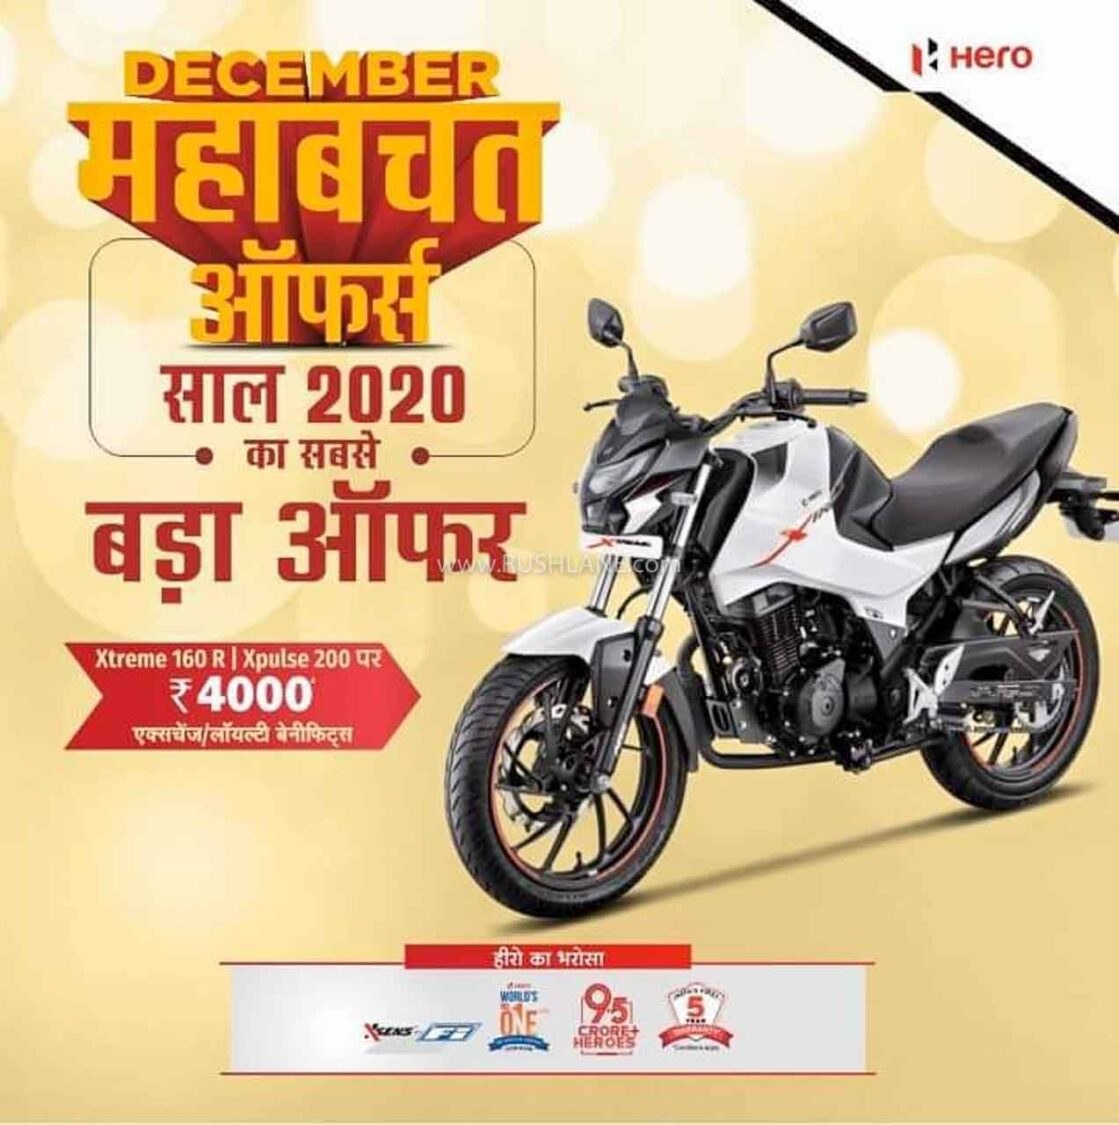 Hero discounts Dec 2020